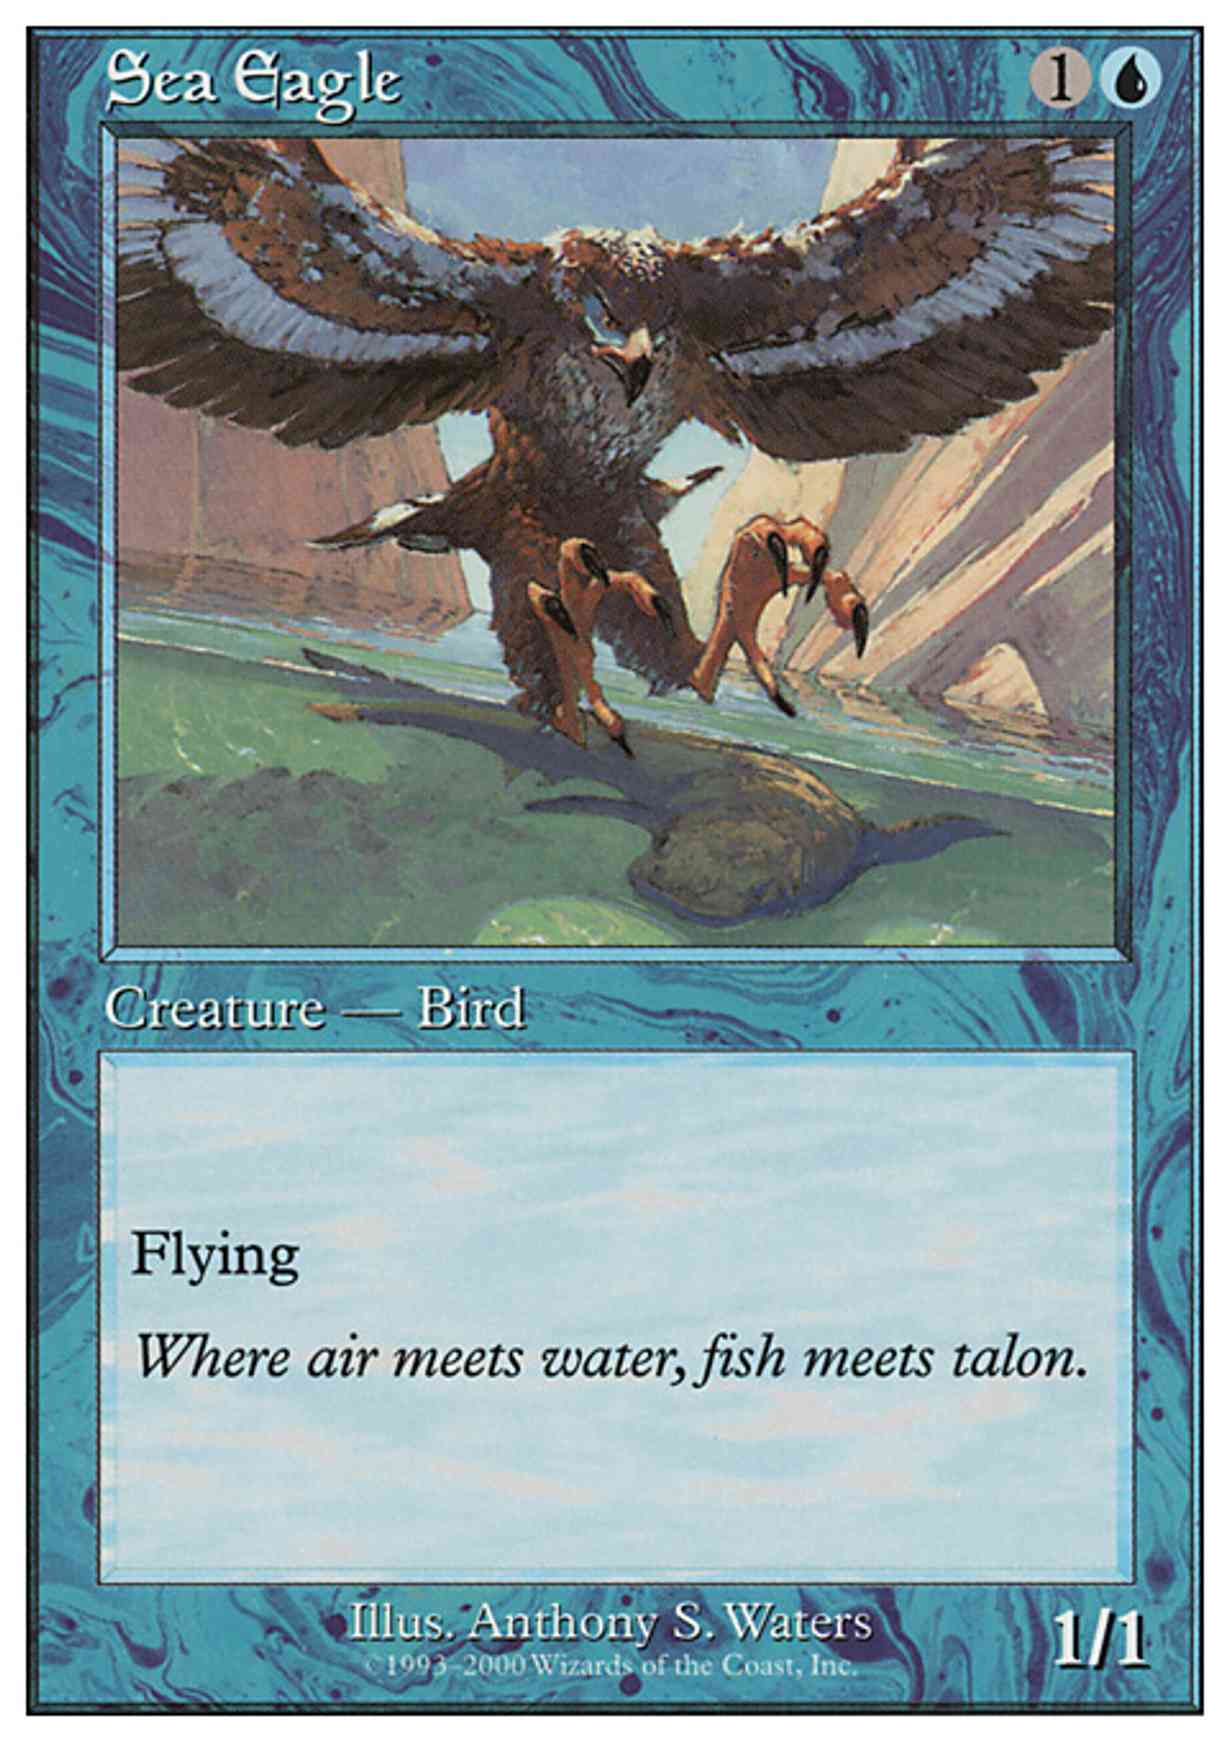 Sea Eagle magic card front